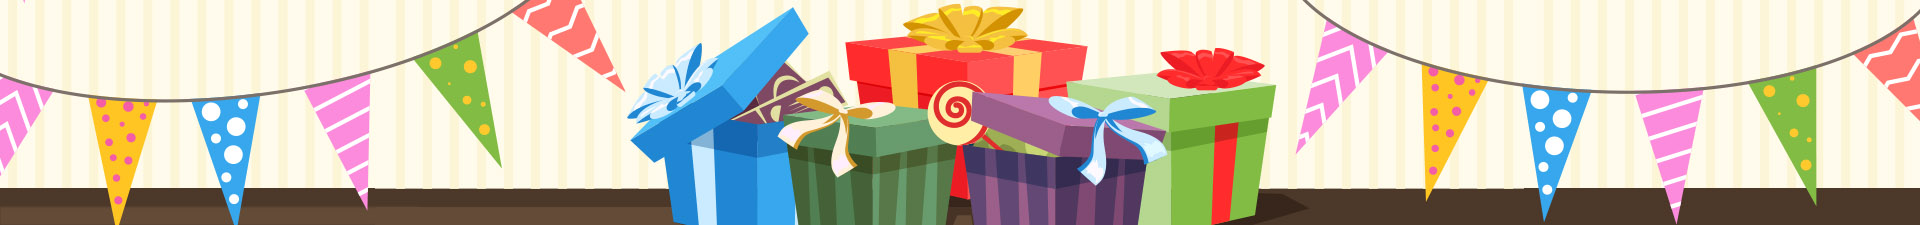 Online-Großhandel mit Geschenkartikeln für Kinder